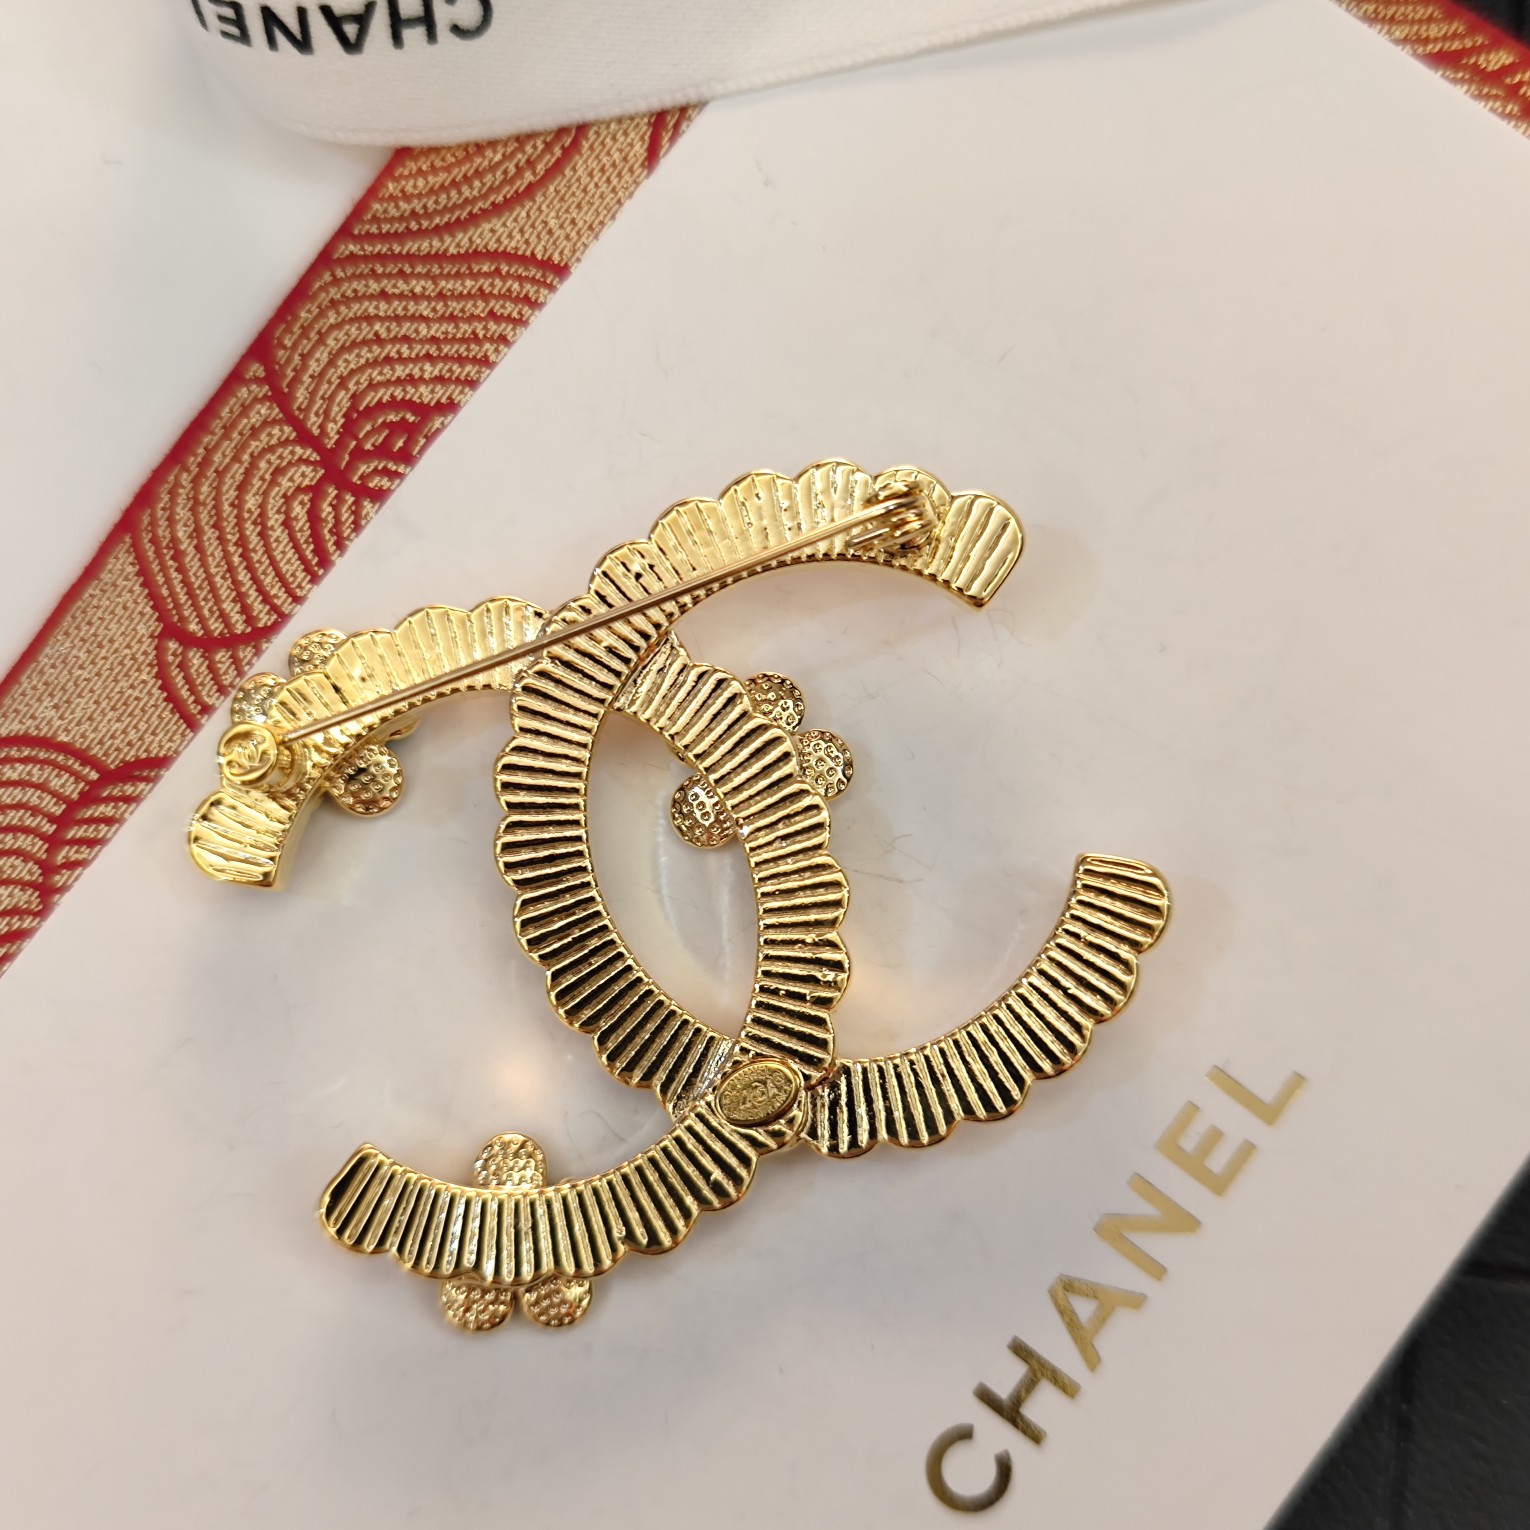 00581 Chanel brooch